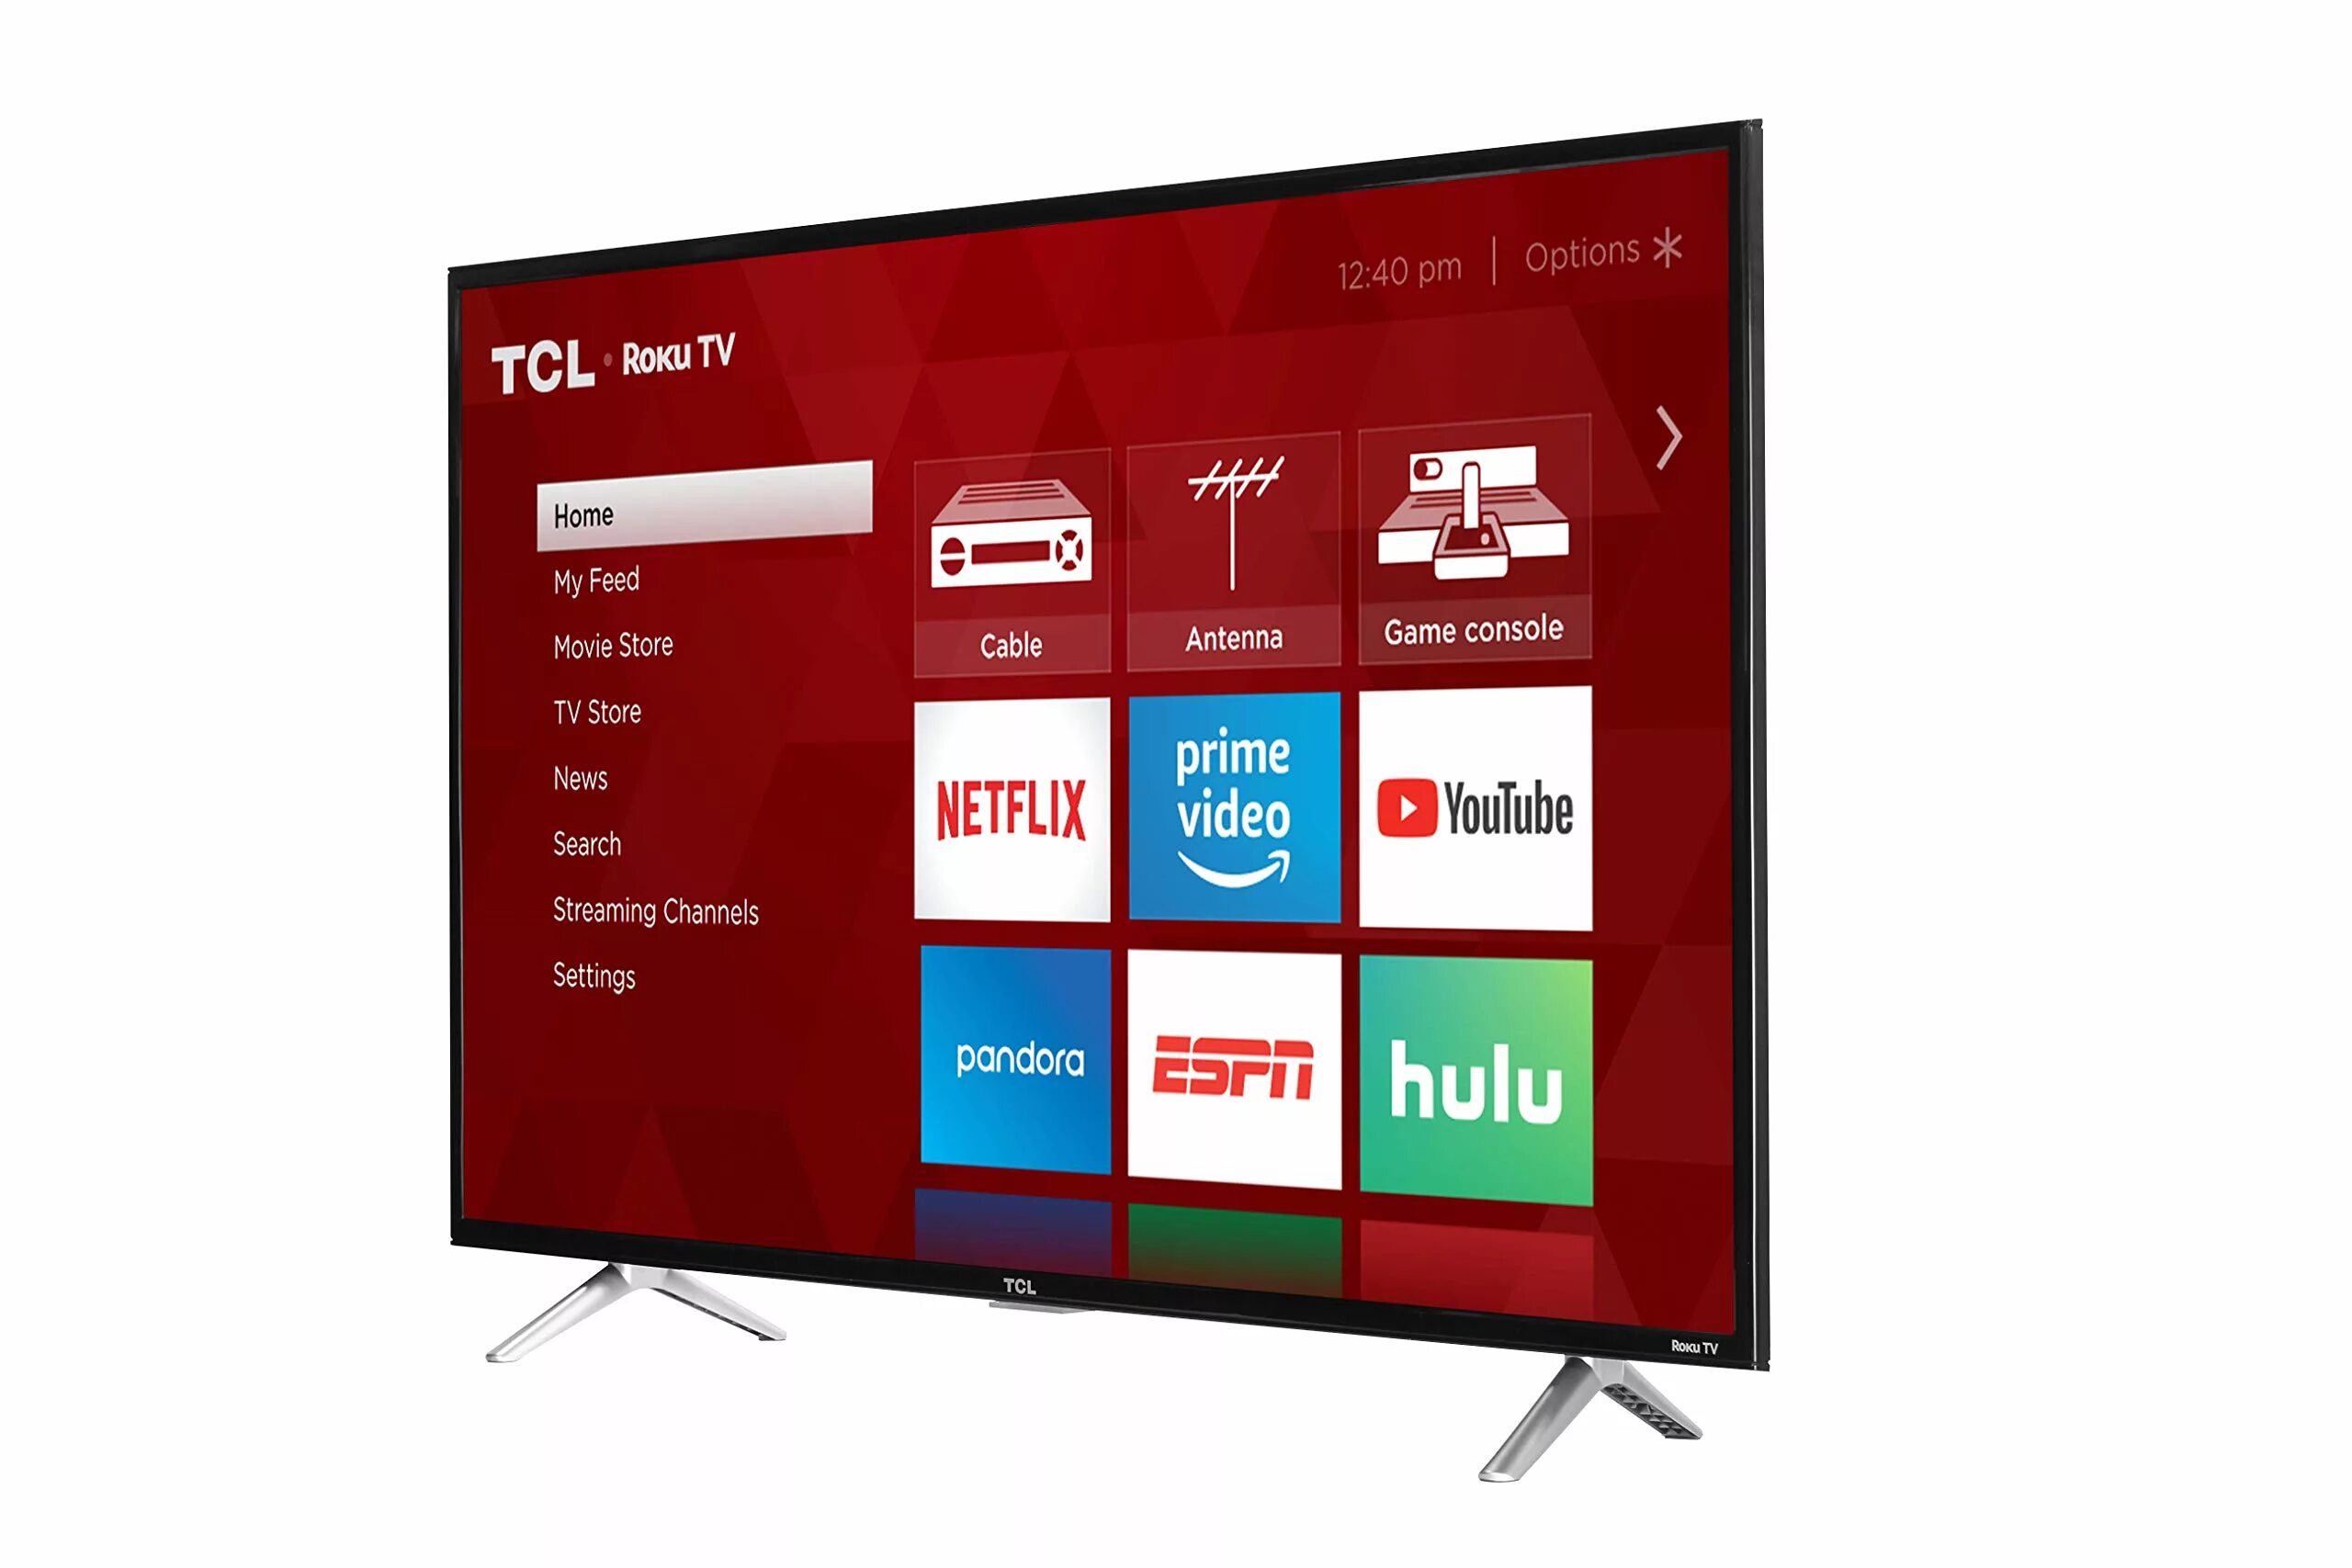 Сравнение телевизоров tcl. TCL 32s525. TCL 43s65a. TCL led TV 43s5200. Led телевизор TCL 32s525.